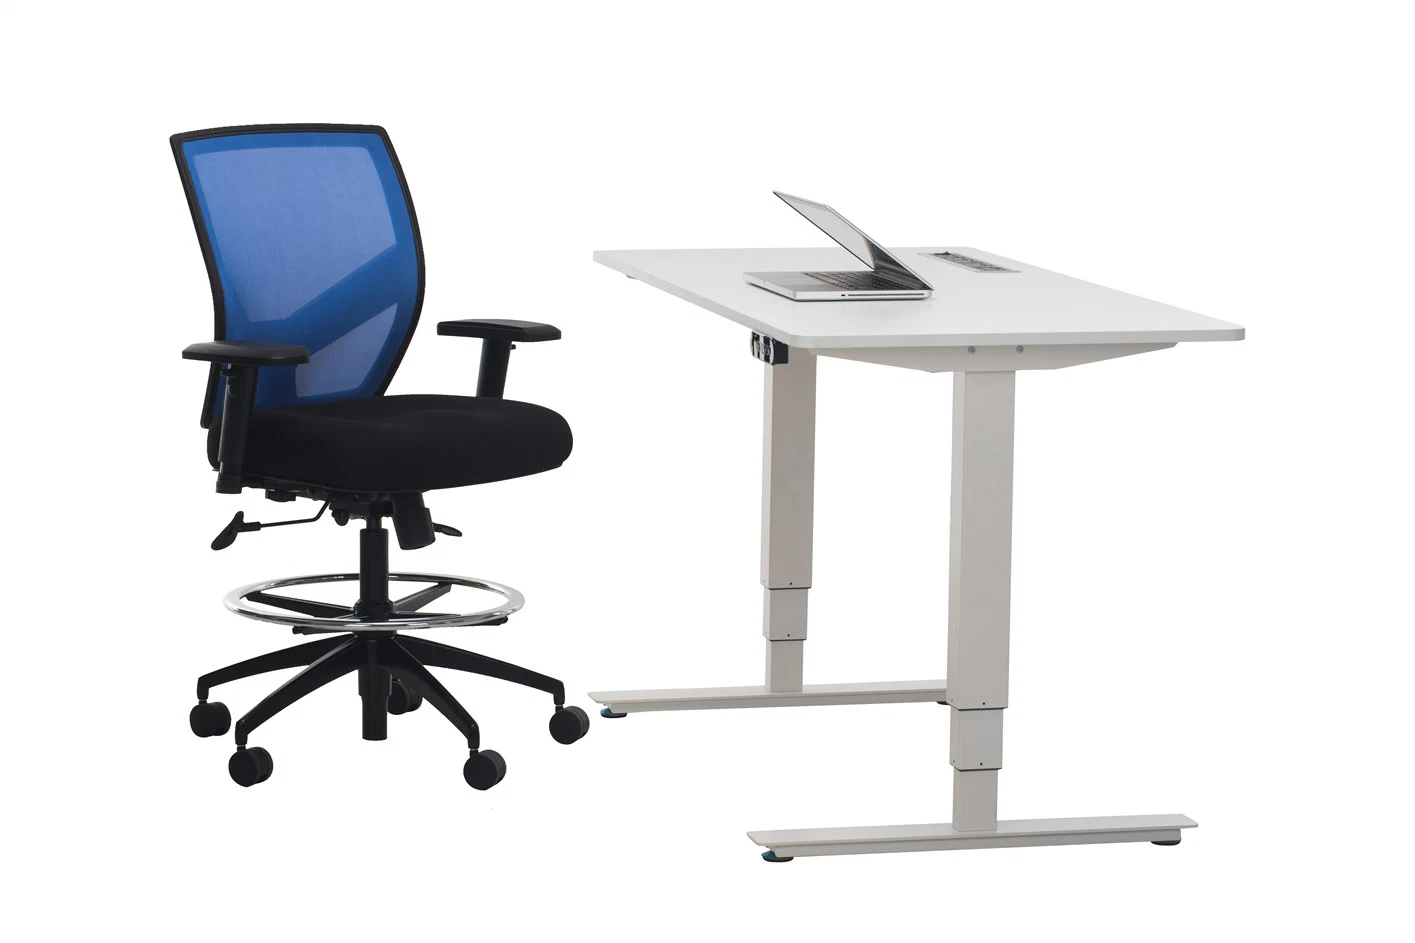 Ud2 Height Adjustable Standing Office Desk Office Furniture Student Desk